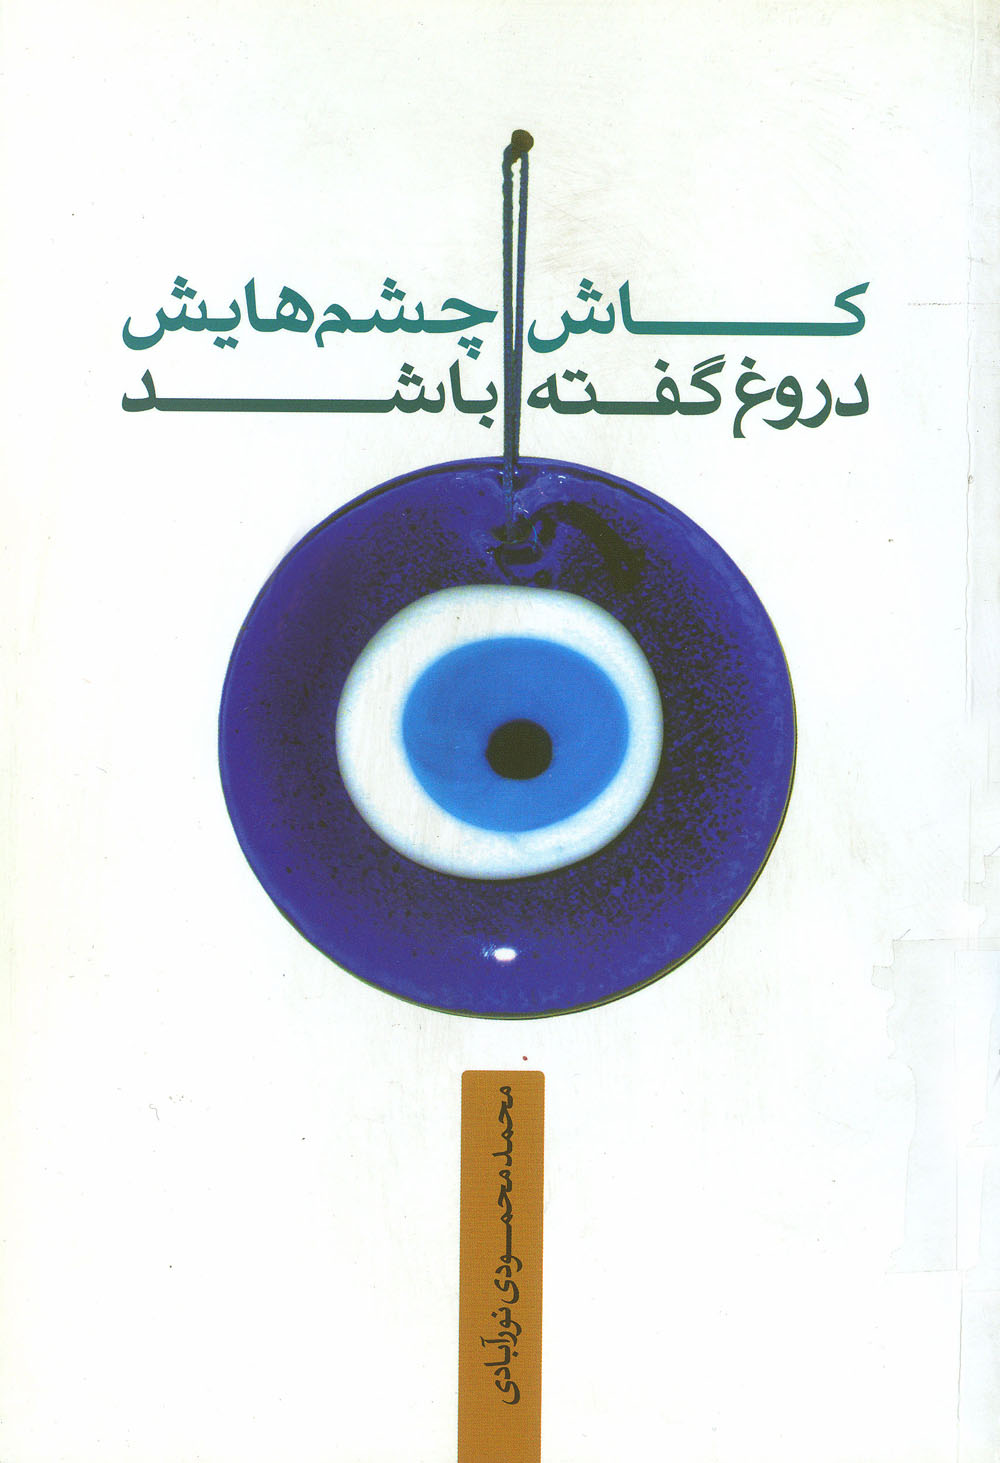 معرفی کتابِ «کاش چشمهایش دروغ گفته باشد» / بر اساس زندگی و نحوه شهادت برادر نویسنده شهید عبدالرسول محمودی